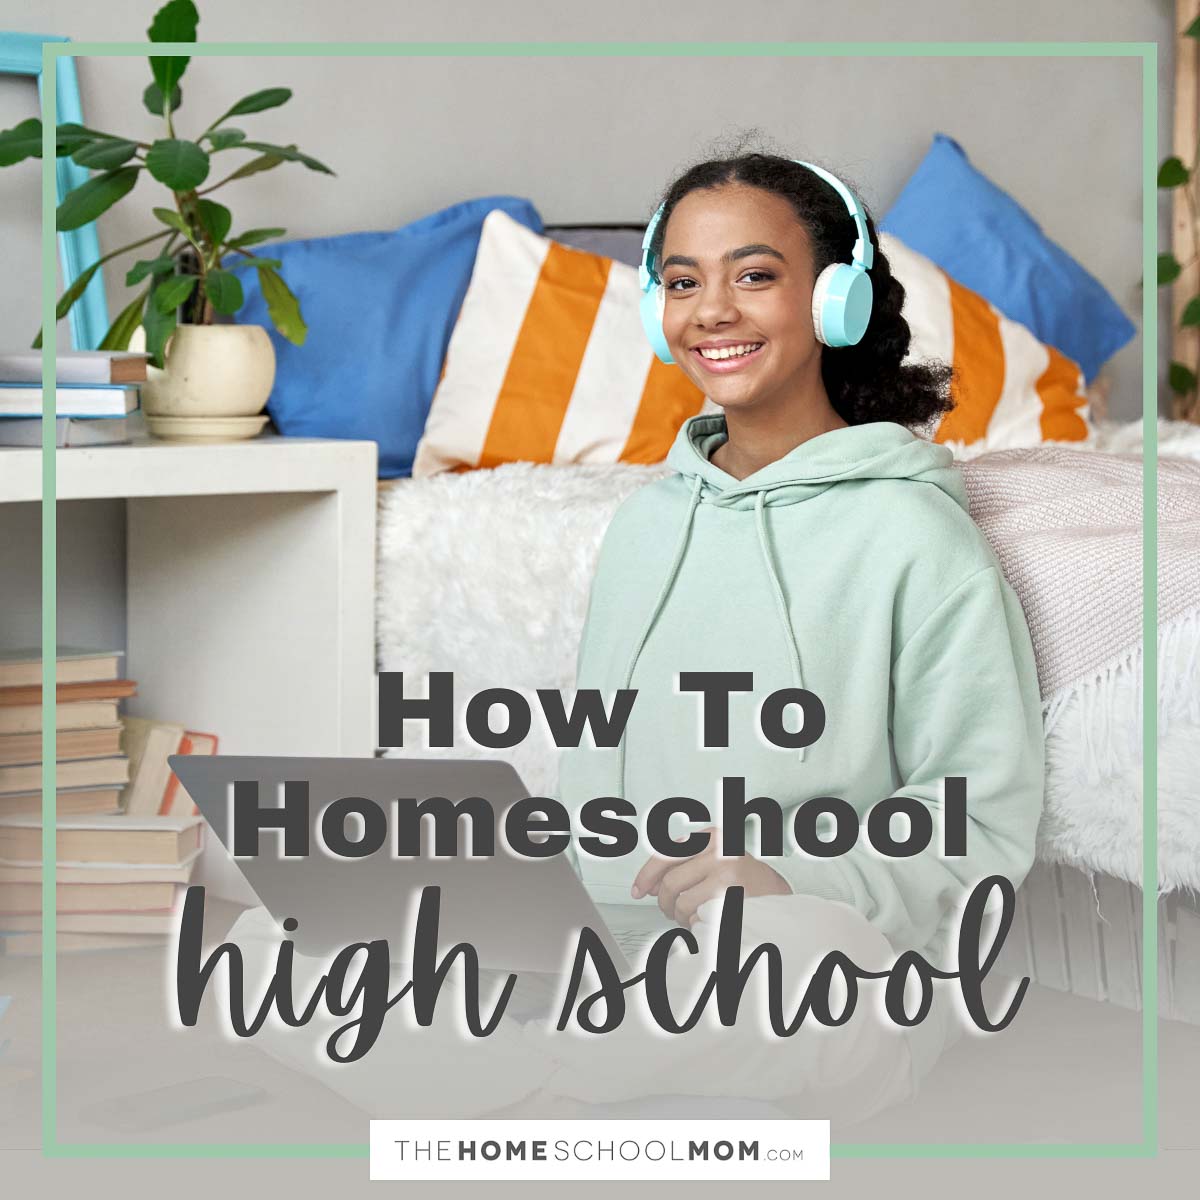 How to Homeschool High School.